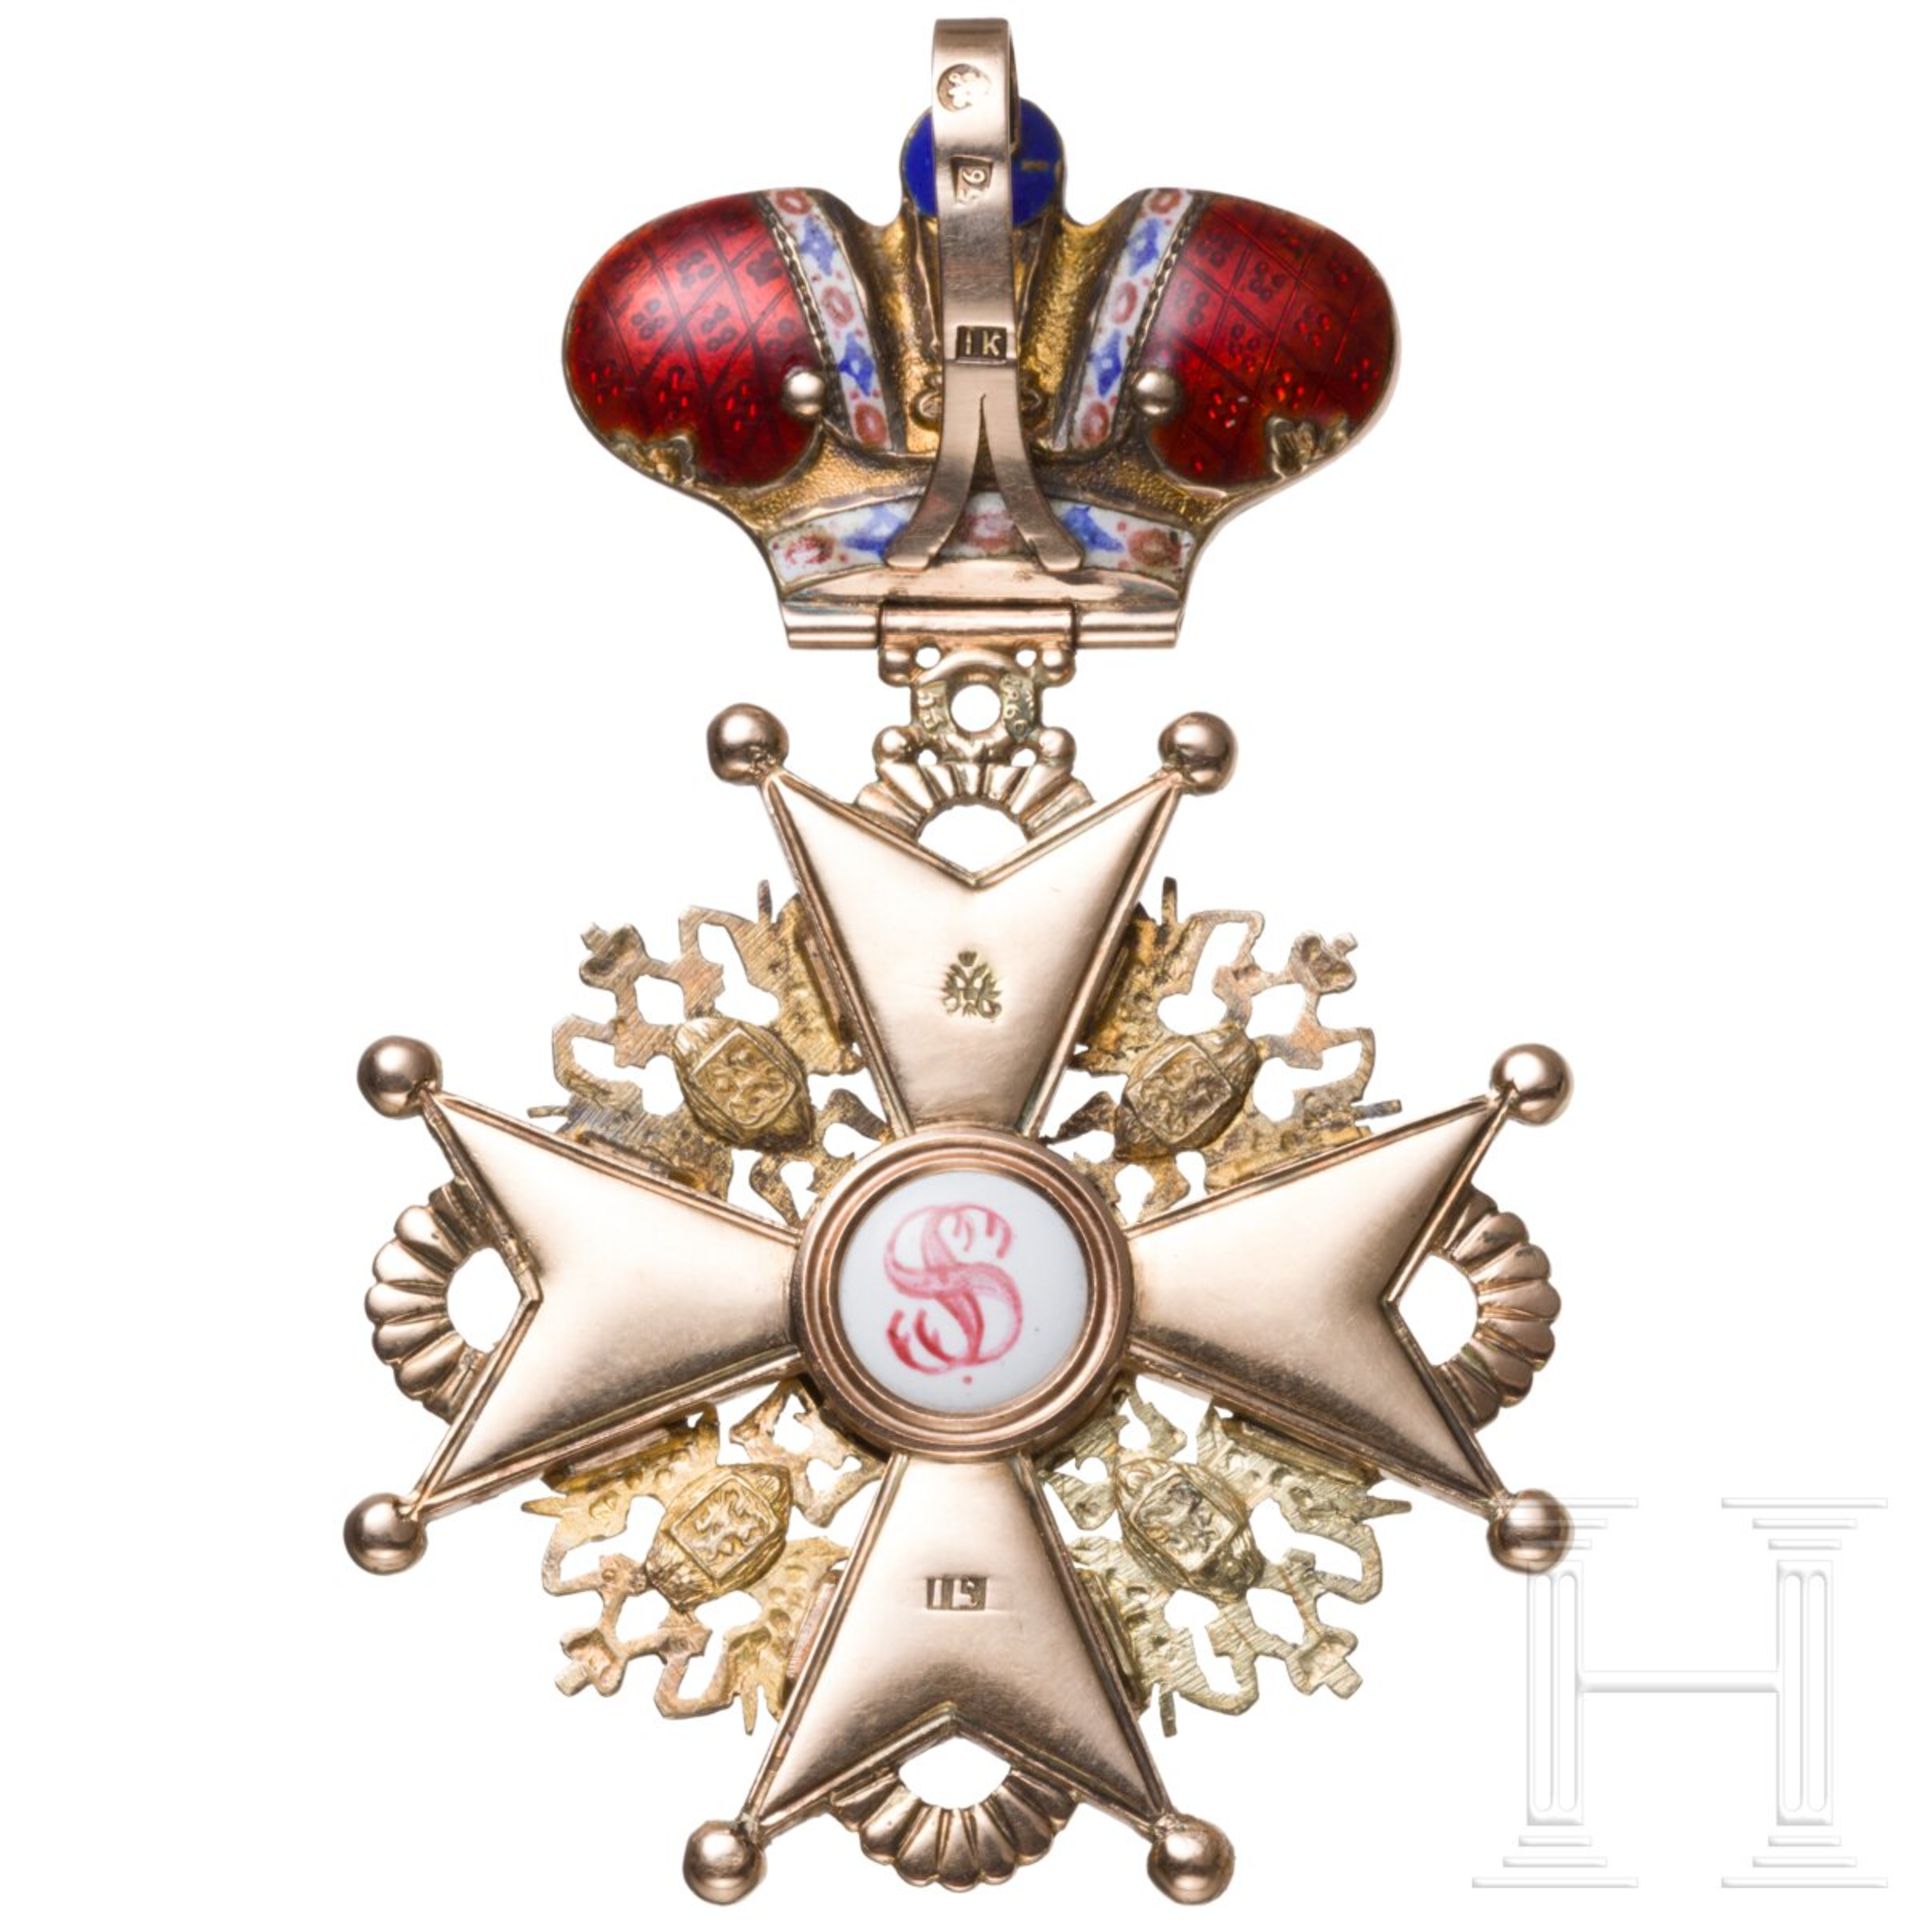 St.-Stanislaus-Orden - Kreuz 2. Klasse mit Krone, Russland, datiert 1866 - Bild 2 aus 7